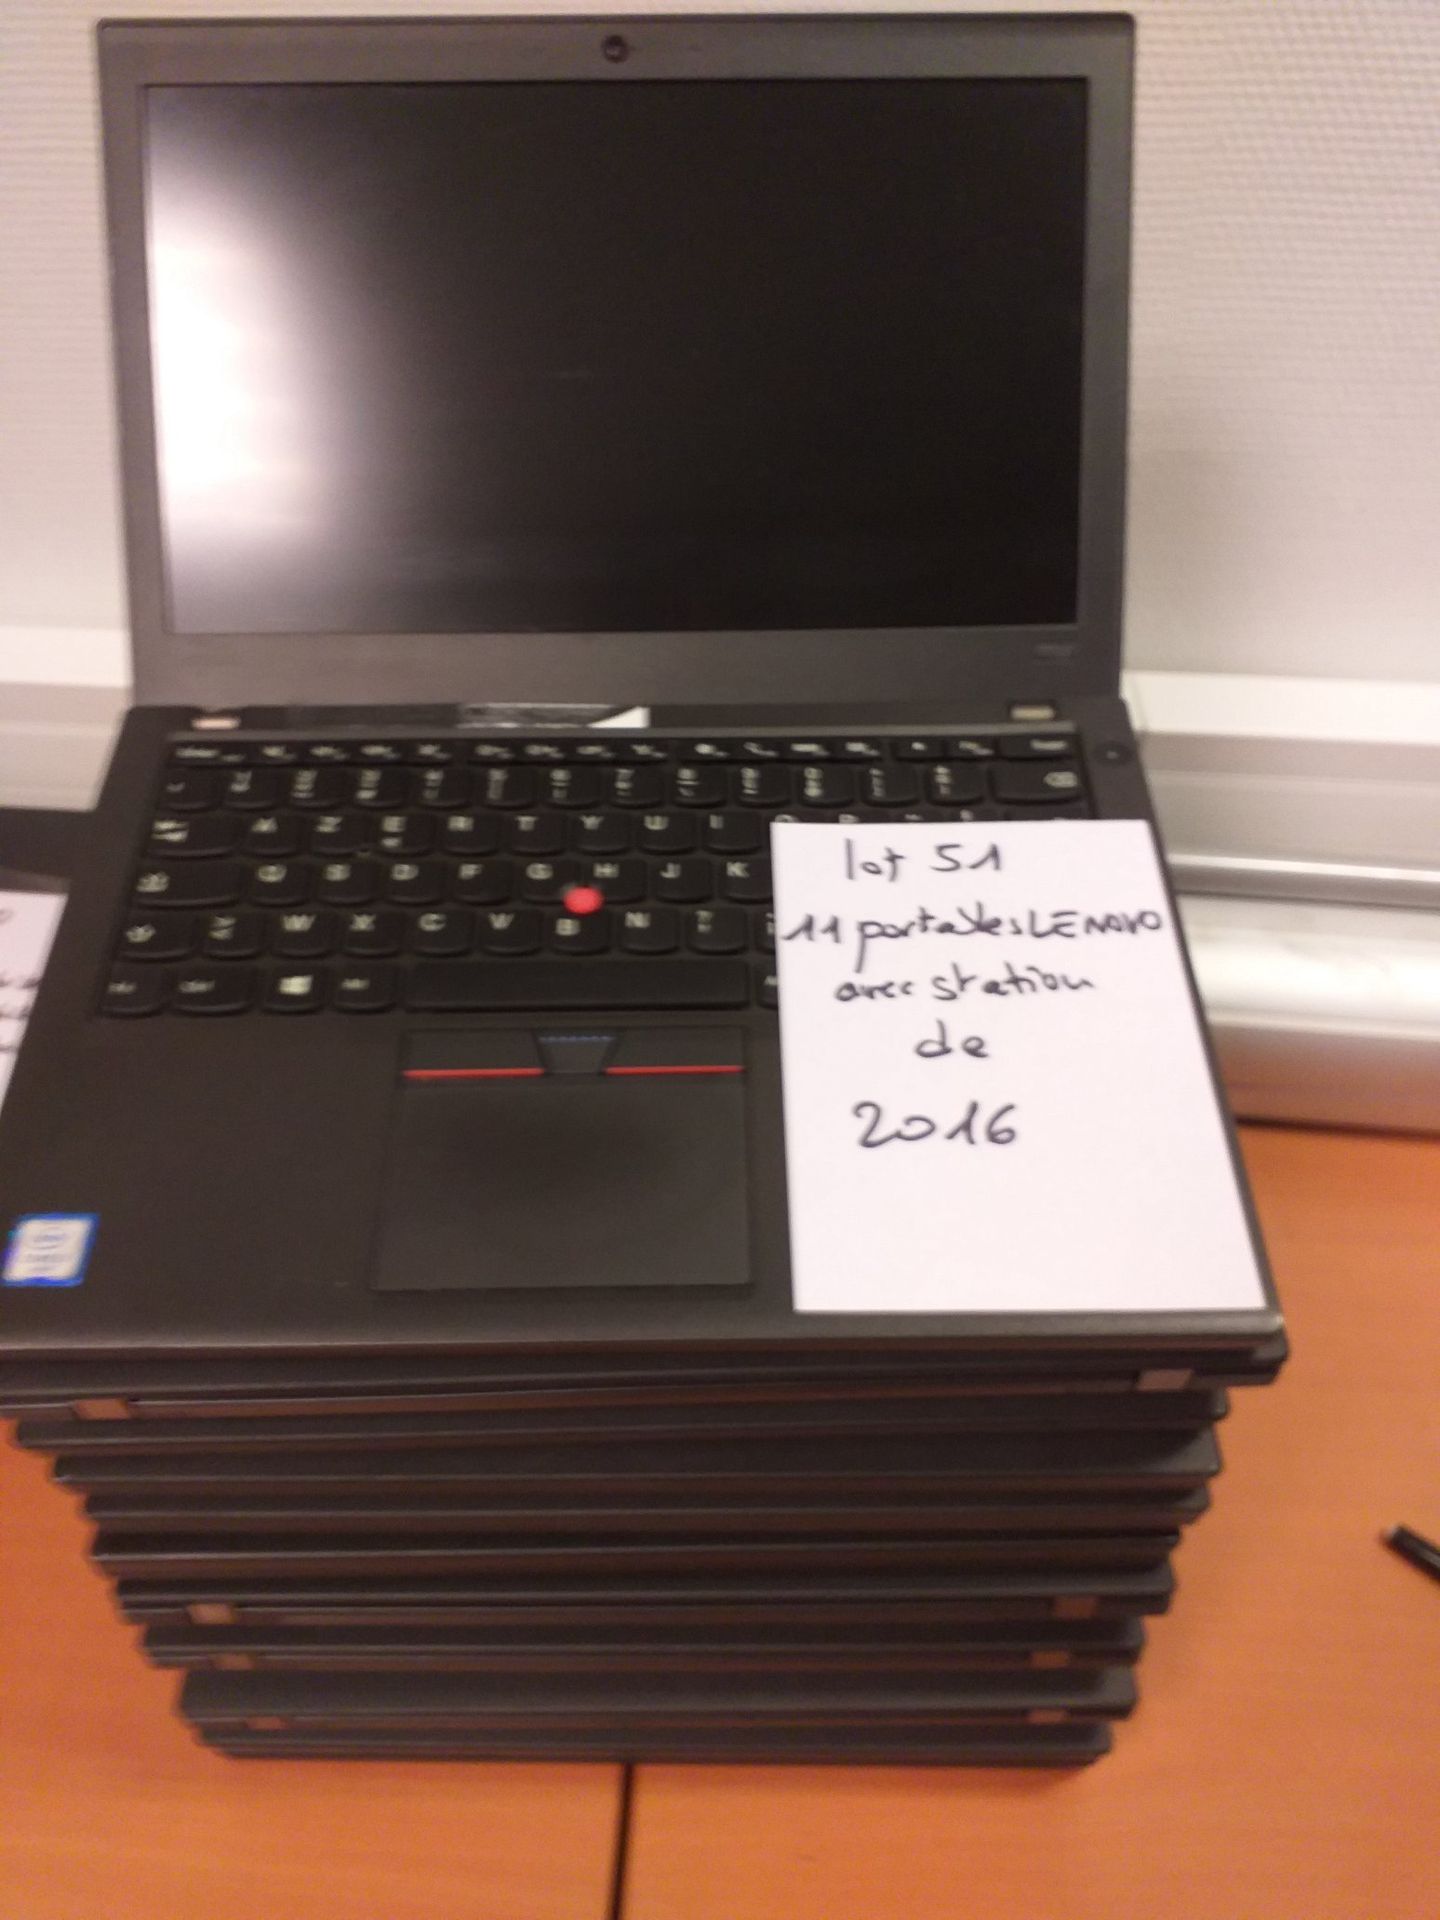 Null Lot de 11 PC de marque Lenovo X260 datant de 2016 (n° 51).
Sans clavier, sa&hellip;